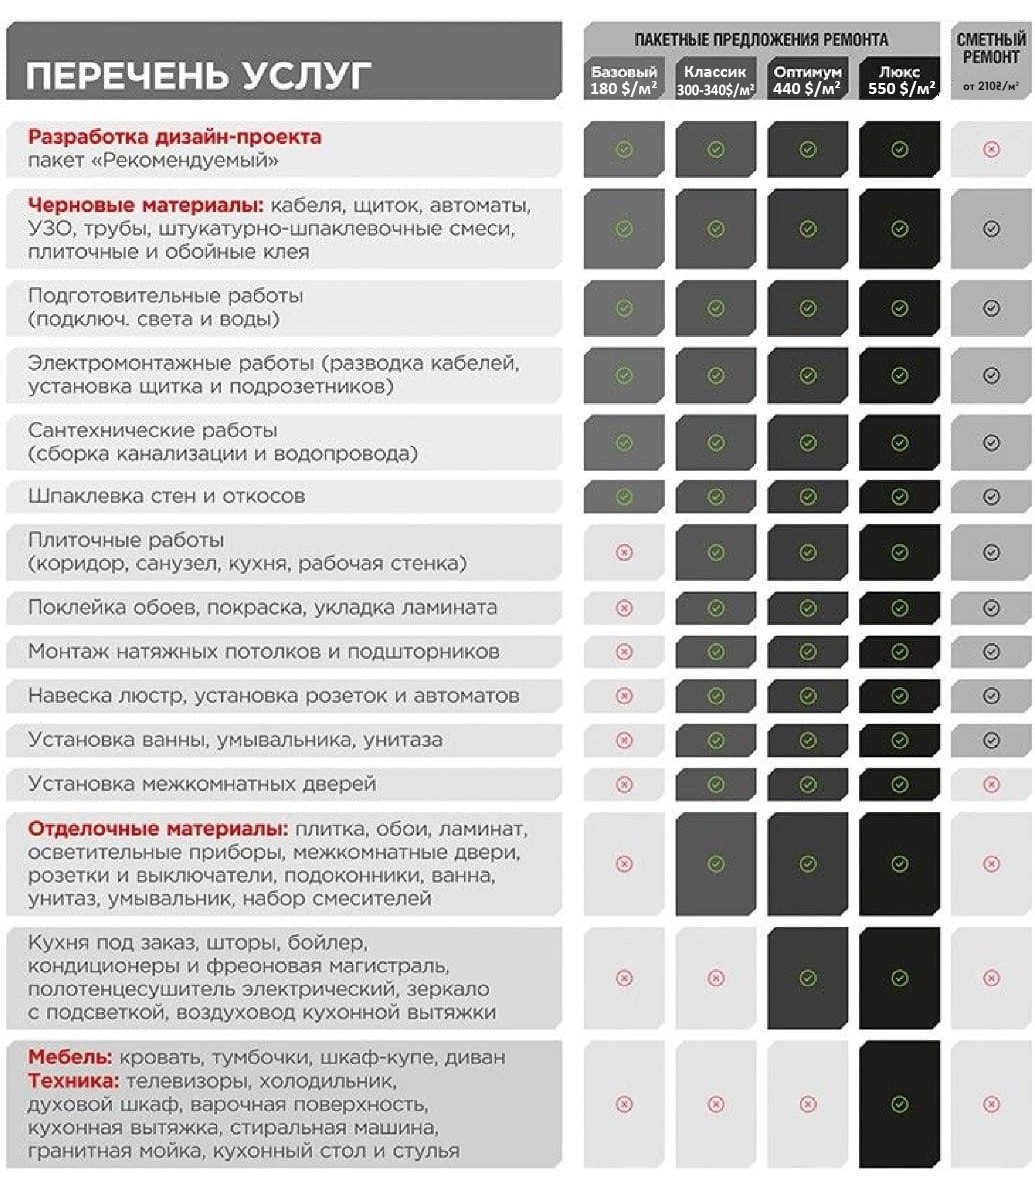 Прайс-лист на ремонтно-строительные работы в Москве